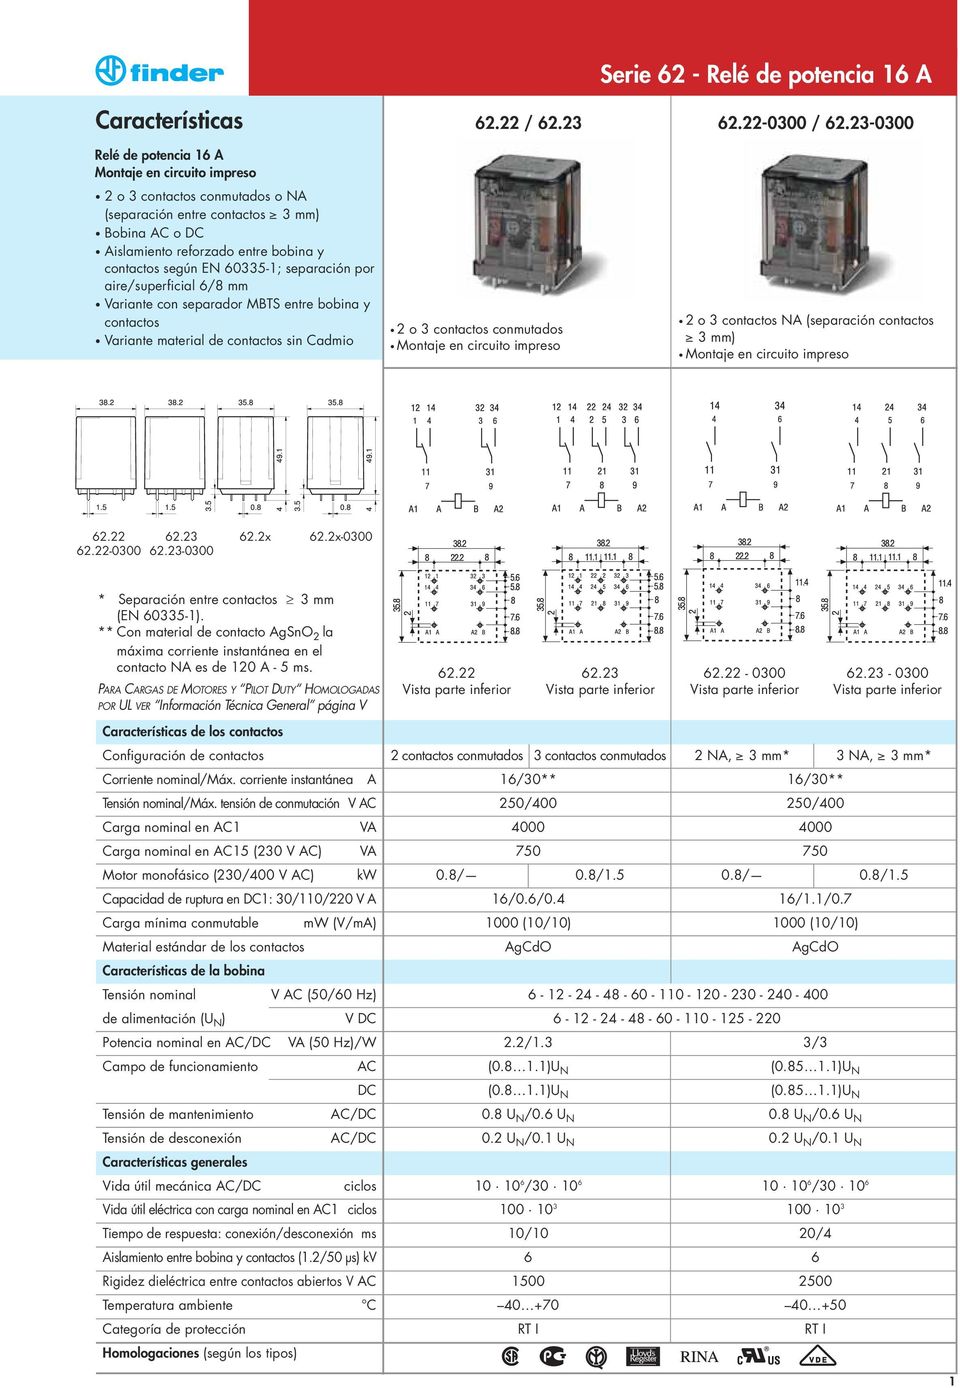 60335-1; separación por aire/superficial 6/8 mm Variante con separador MBTS entre bobina y contactos Variante material de contactos sin Cadmio 2 o 3 contactos conmutados Montaje en circuito impreso 2